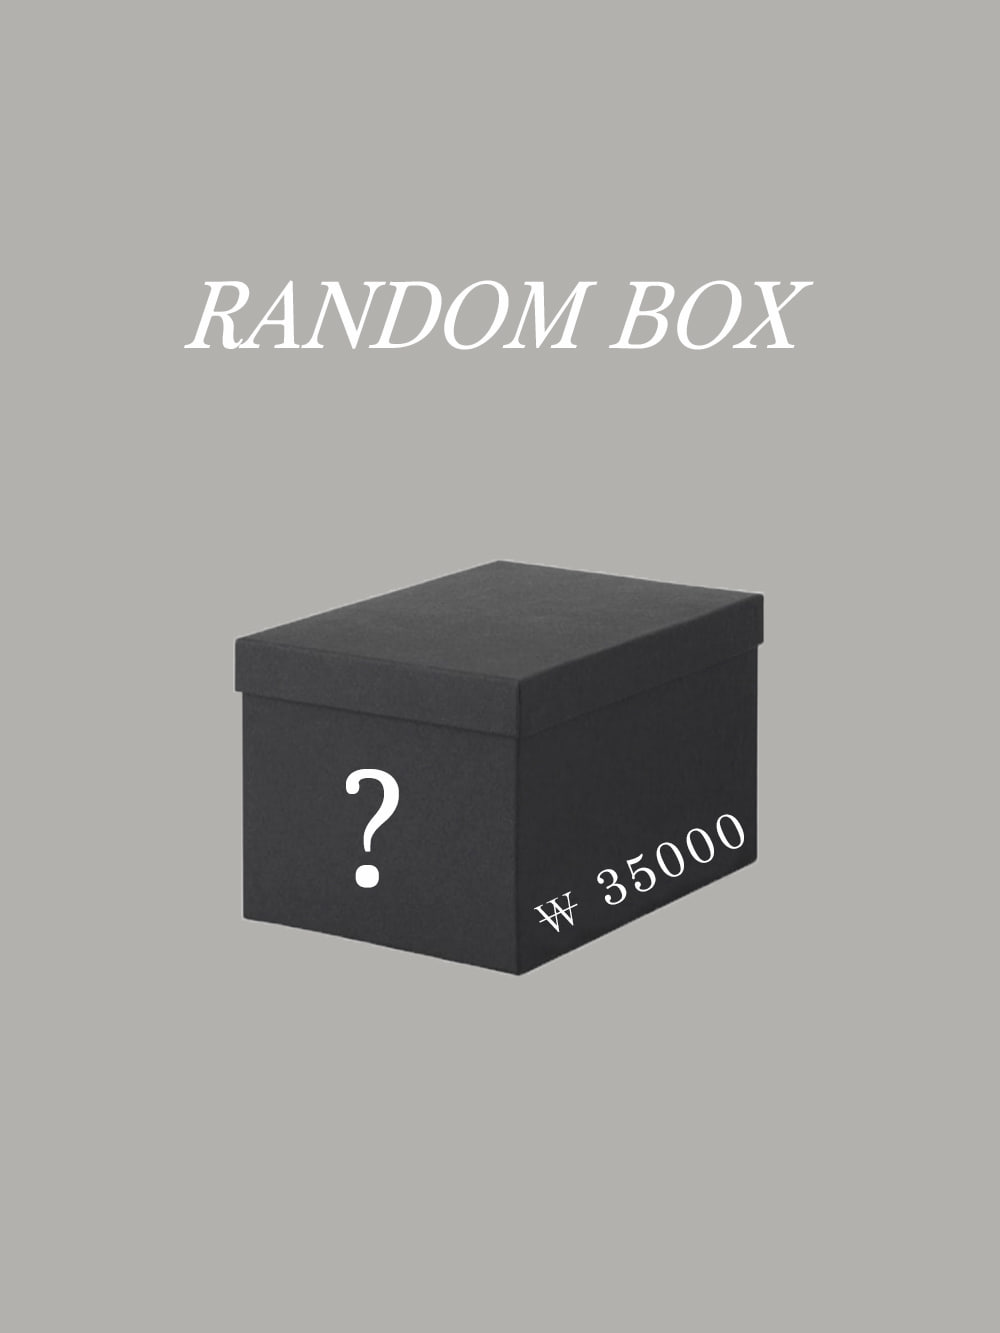 Random box